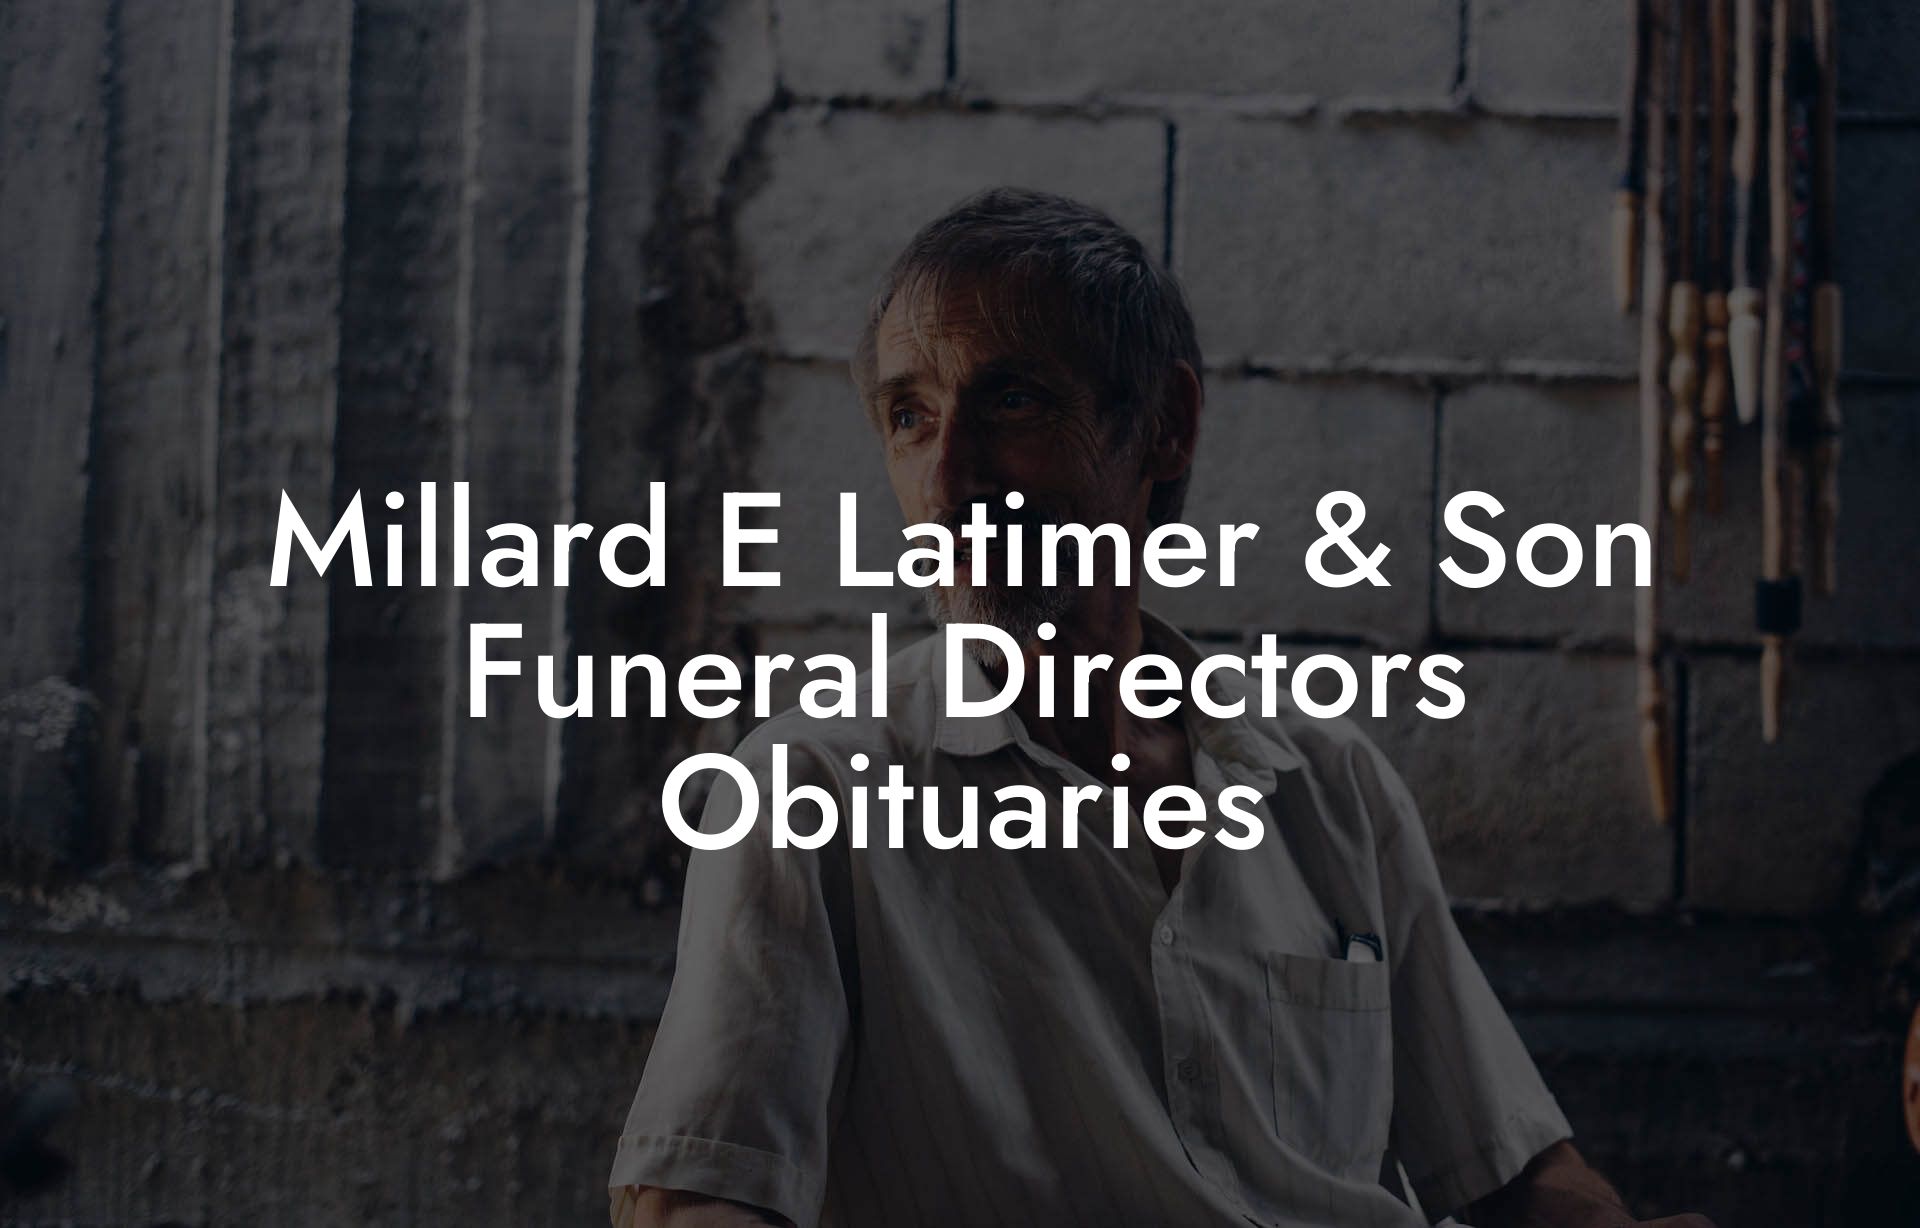 Millard E Latimer & Son Funeral Directors Obituaries